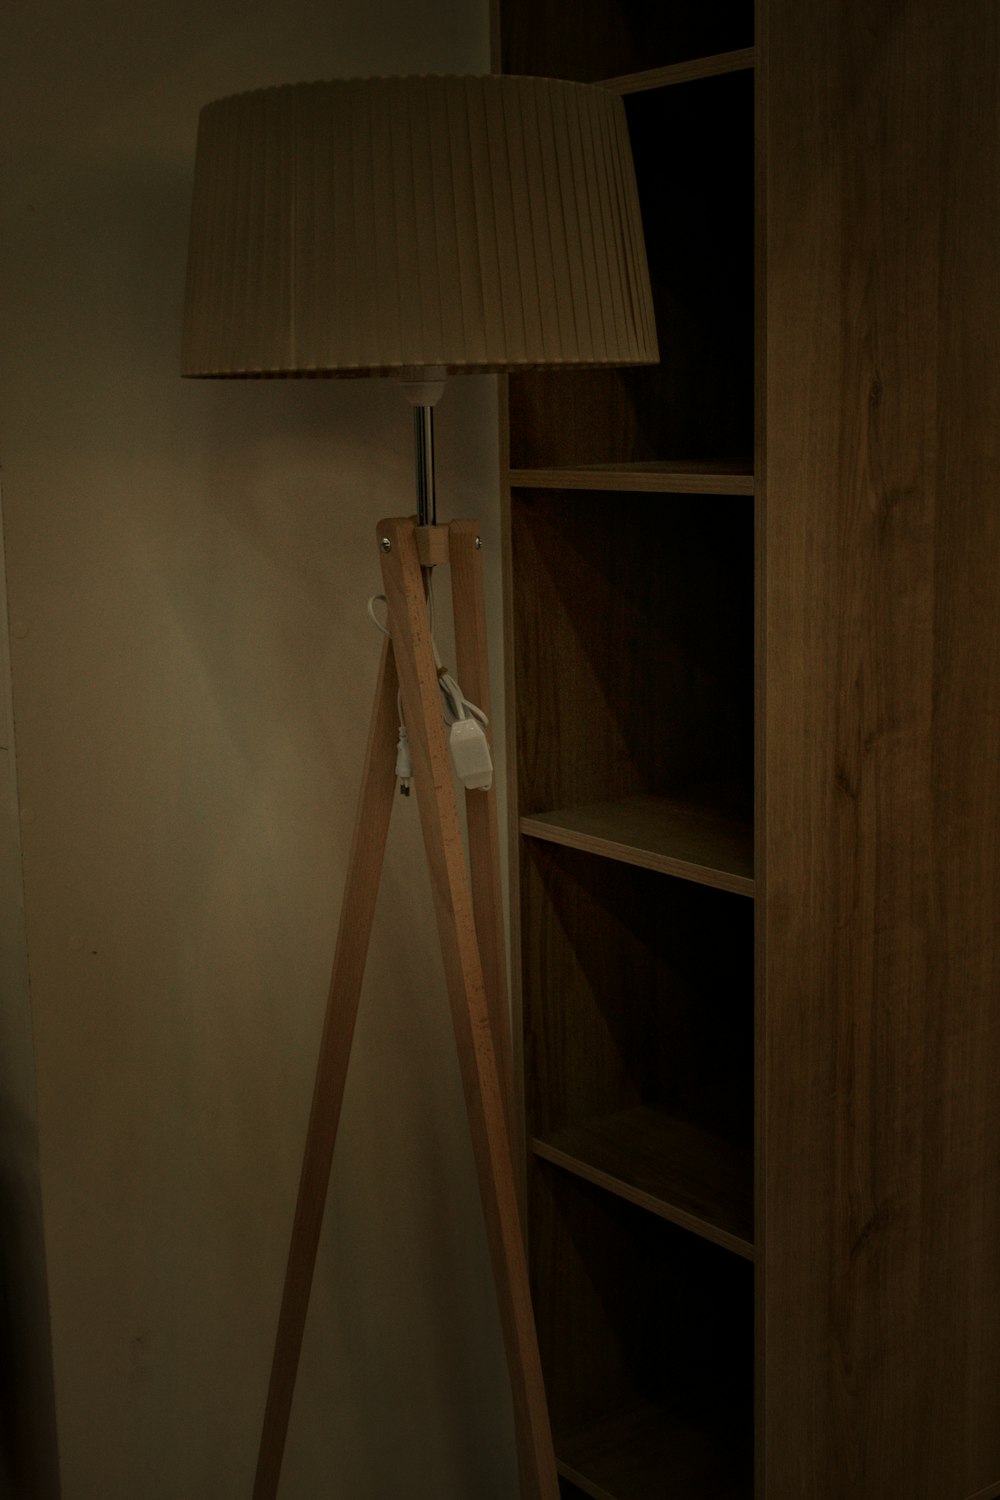 a wooden floor lamp next to a book shelf